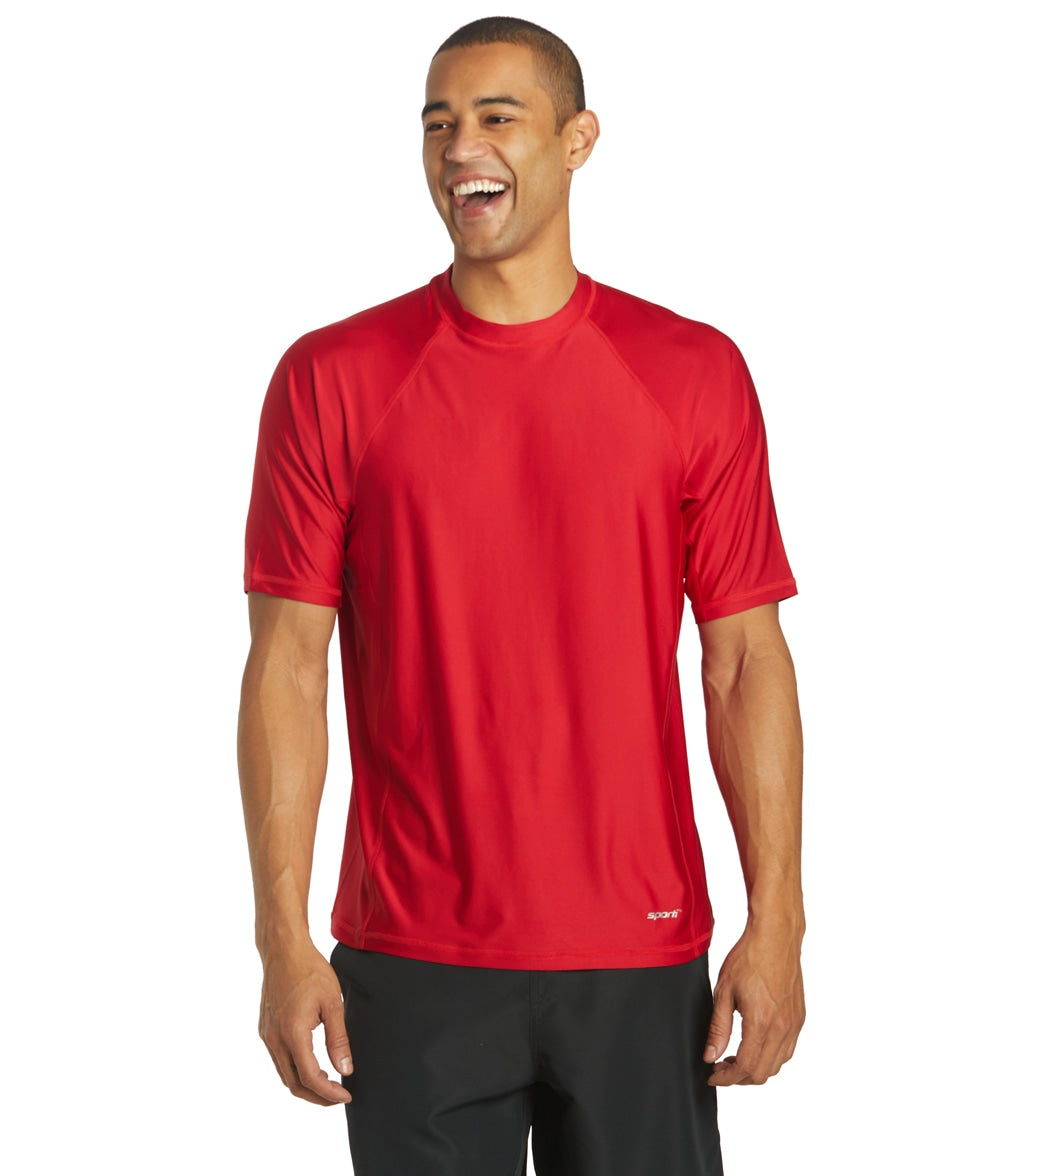 Sporti Men's Short Sleeve Shirt Upf 50+ Comfort Fit Rashguard - Red Large - Swimoutlet.com